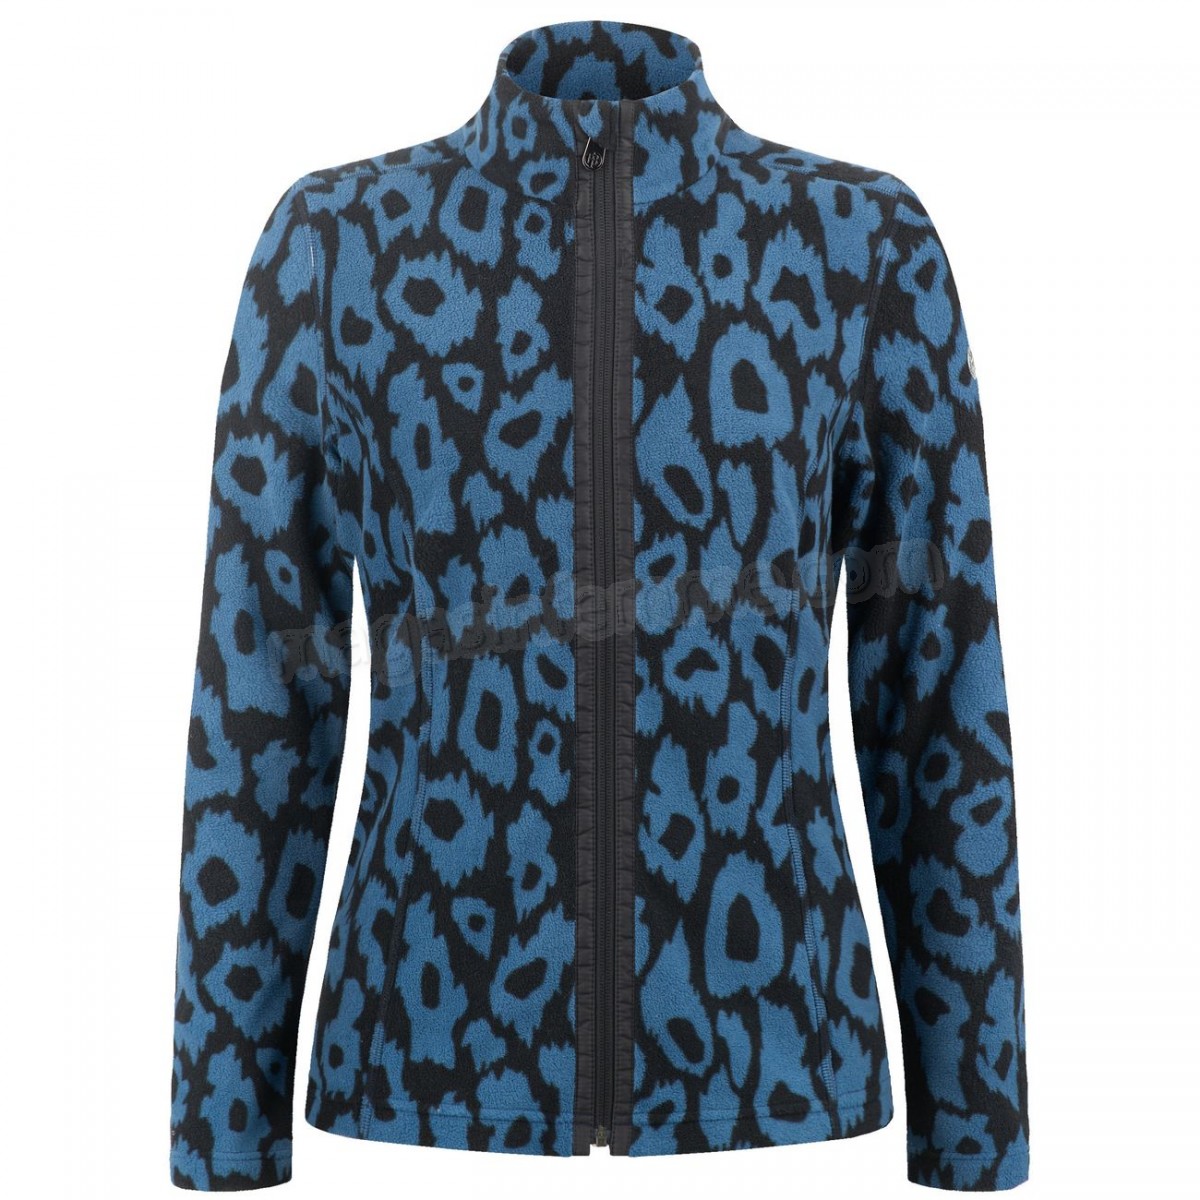 Poivre Blanc-Sports d'hiver femme POIVRE BLANC Veste Polaire Poivre Blanc Fleece Jacket 1500 Panther Blue Femme en solde - -1